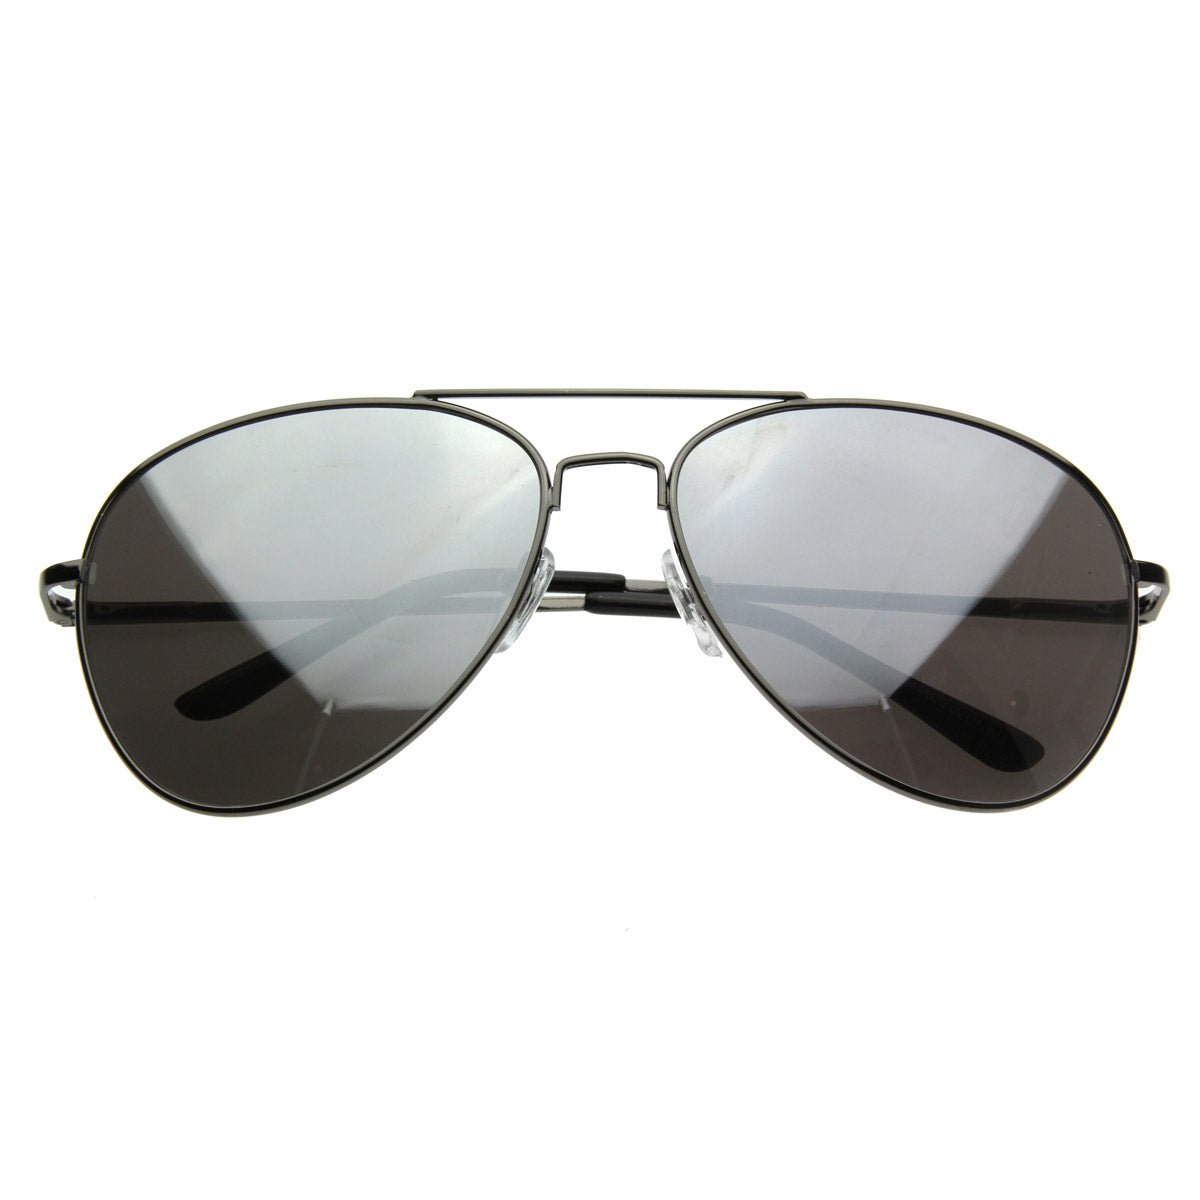 Sunglasses Mirrored FULL Metal Aviator MIRROR